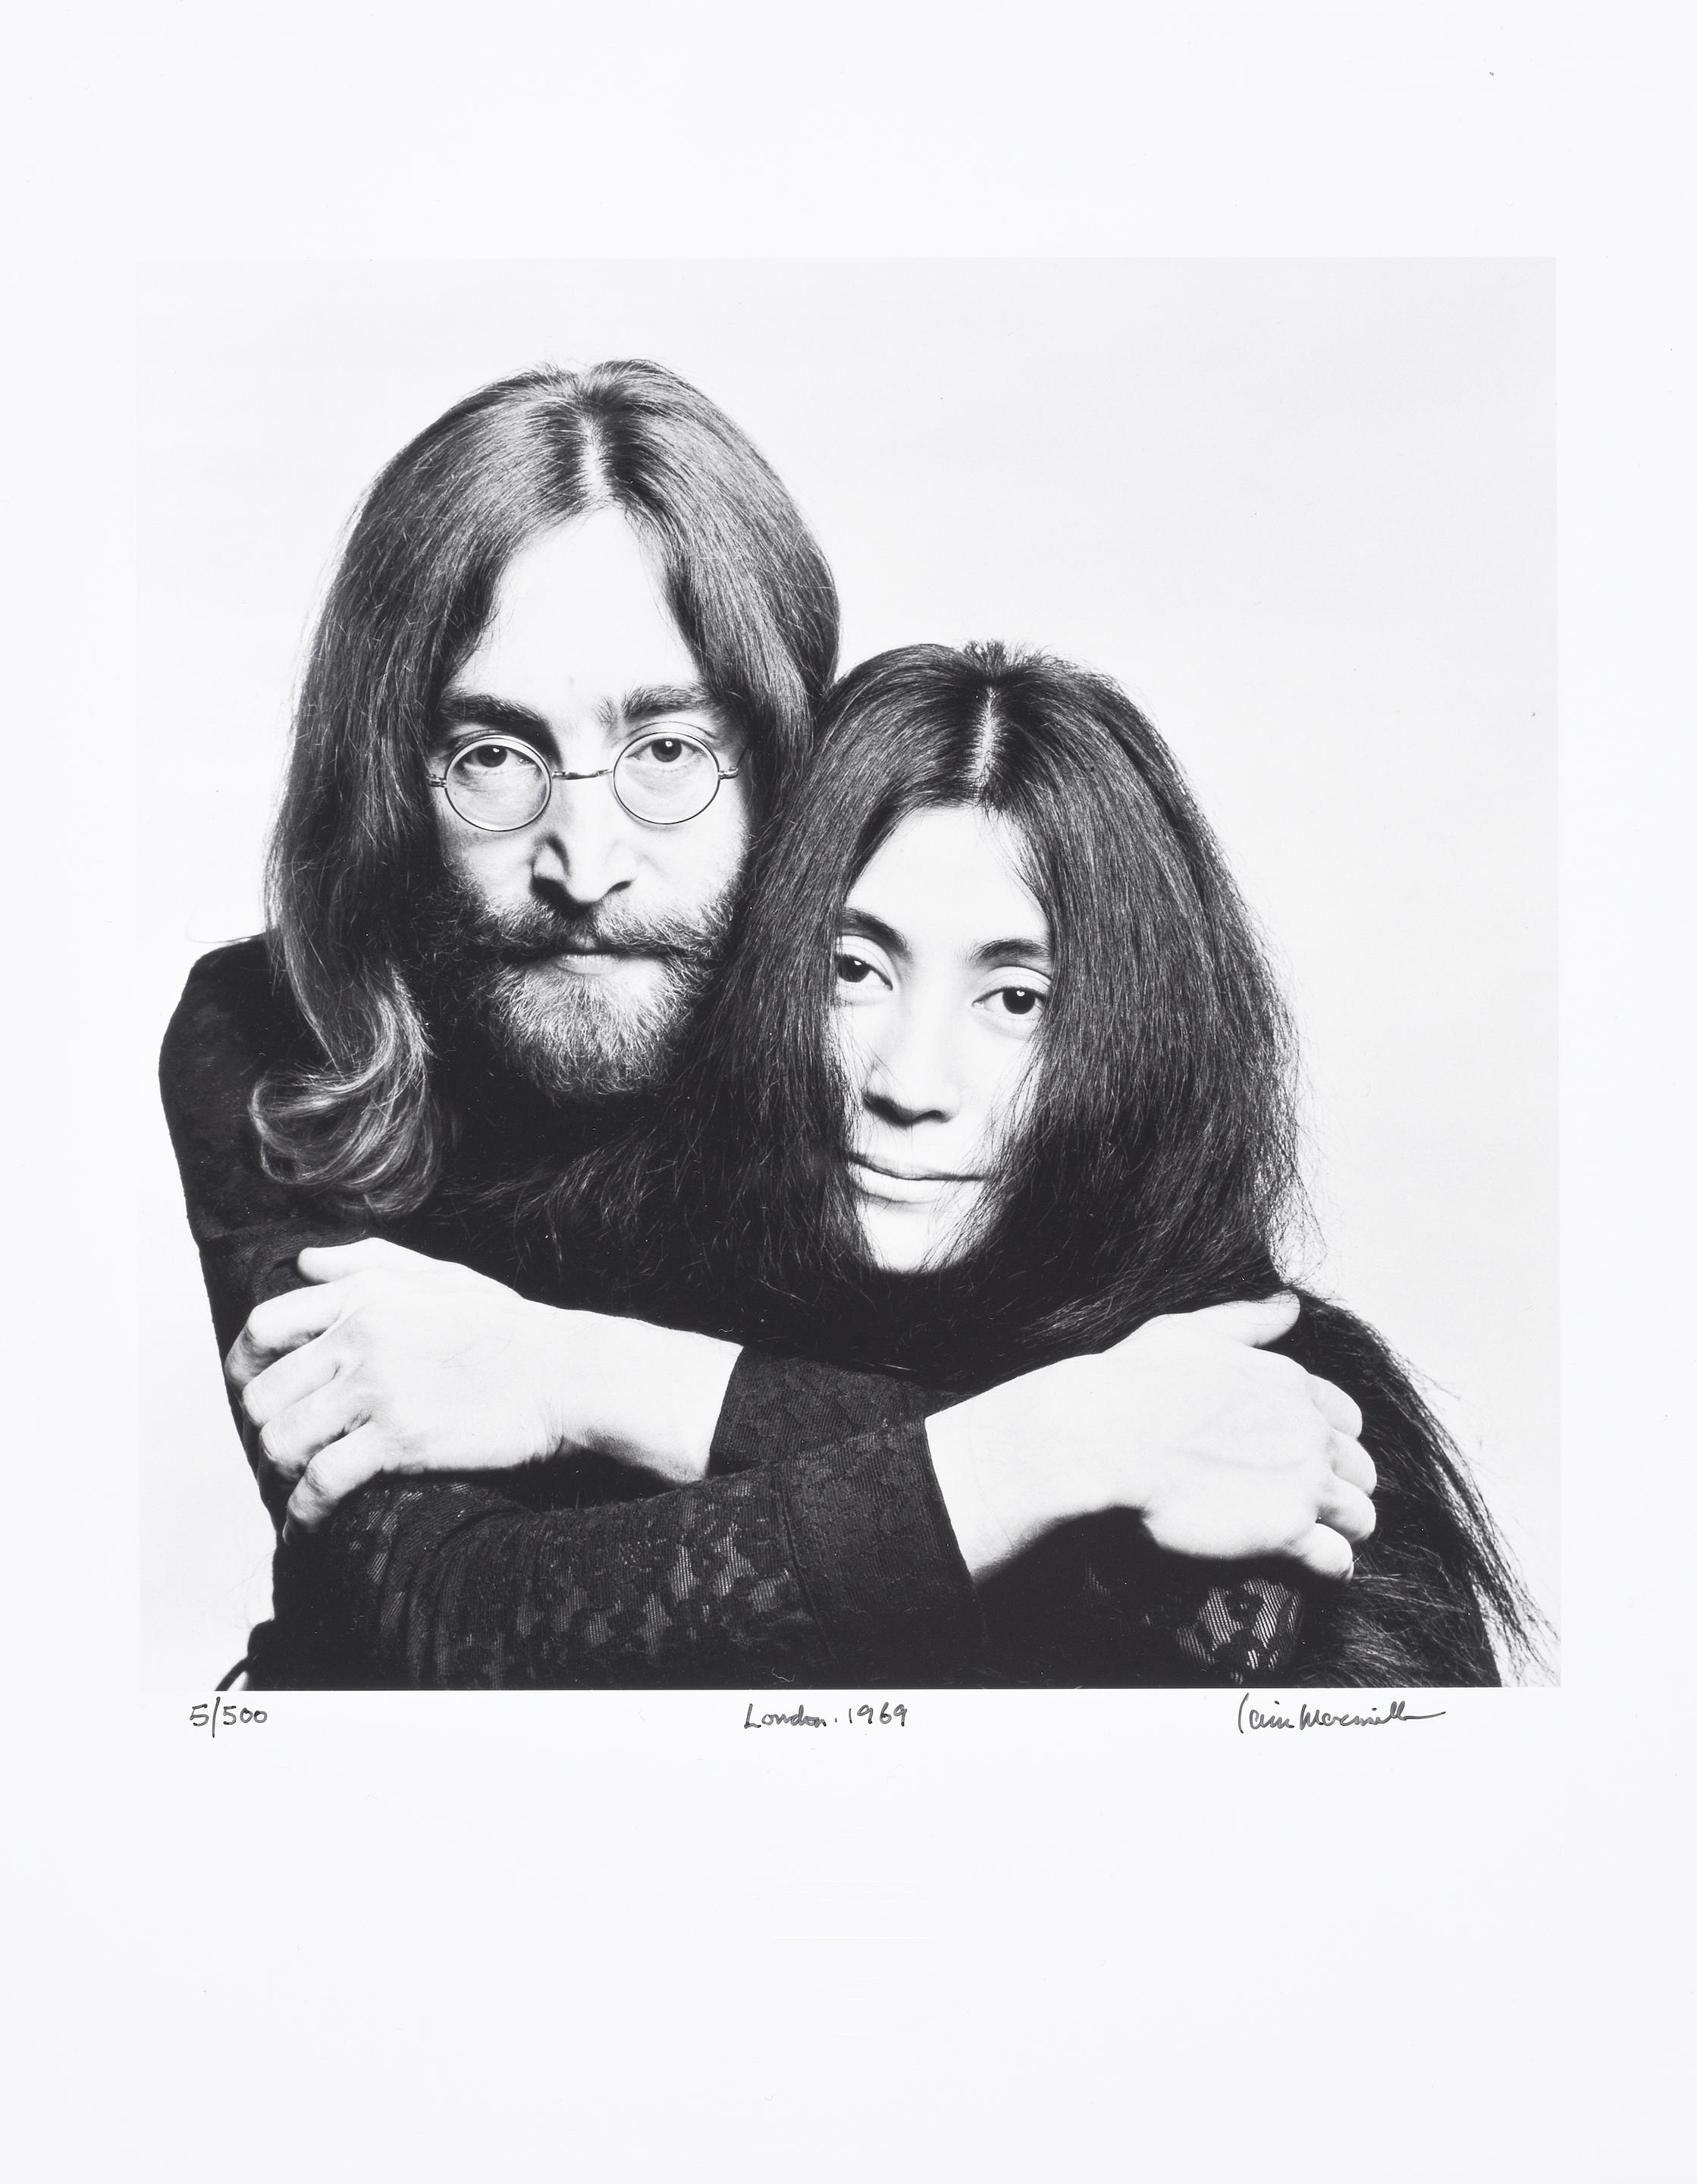 John Lennon & Yoko Ono, London